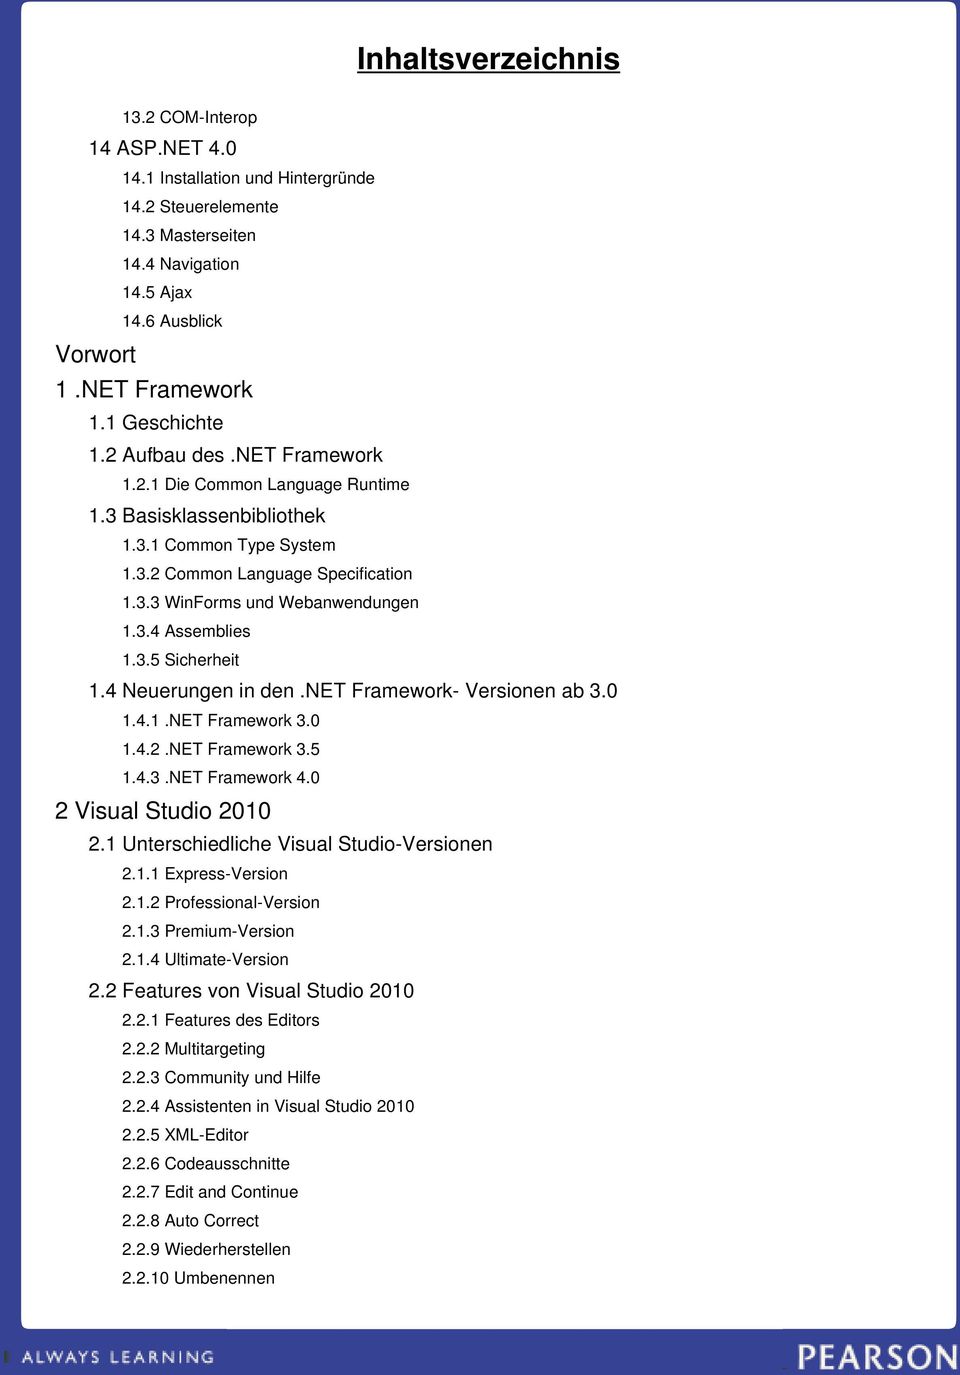 4 Neuerungen in den.net Framework- Versionen ab 3.0 1.4.1.NET Framework 3.0 1.4.2.NET Framework 3.5 1.4.3.NET Framework 4.0 2 Visual Studio 2010 2.1 Unterschiedliche Visual Studio-Versionen 2.1.1 Express-Version 2.